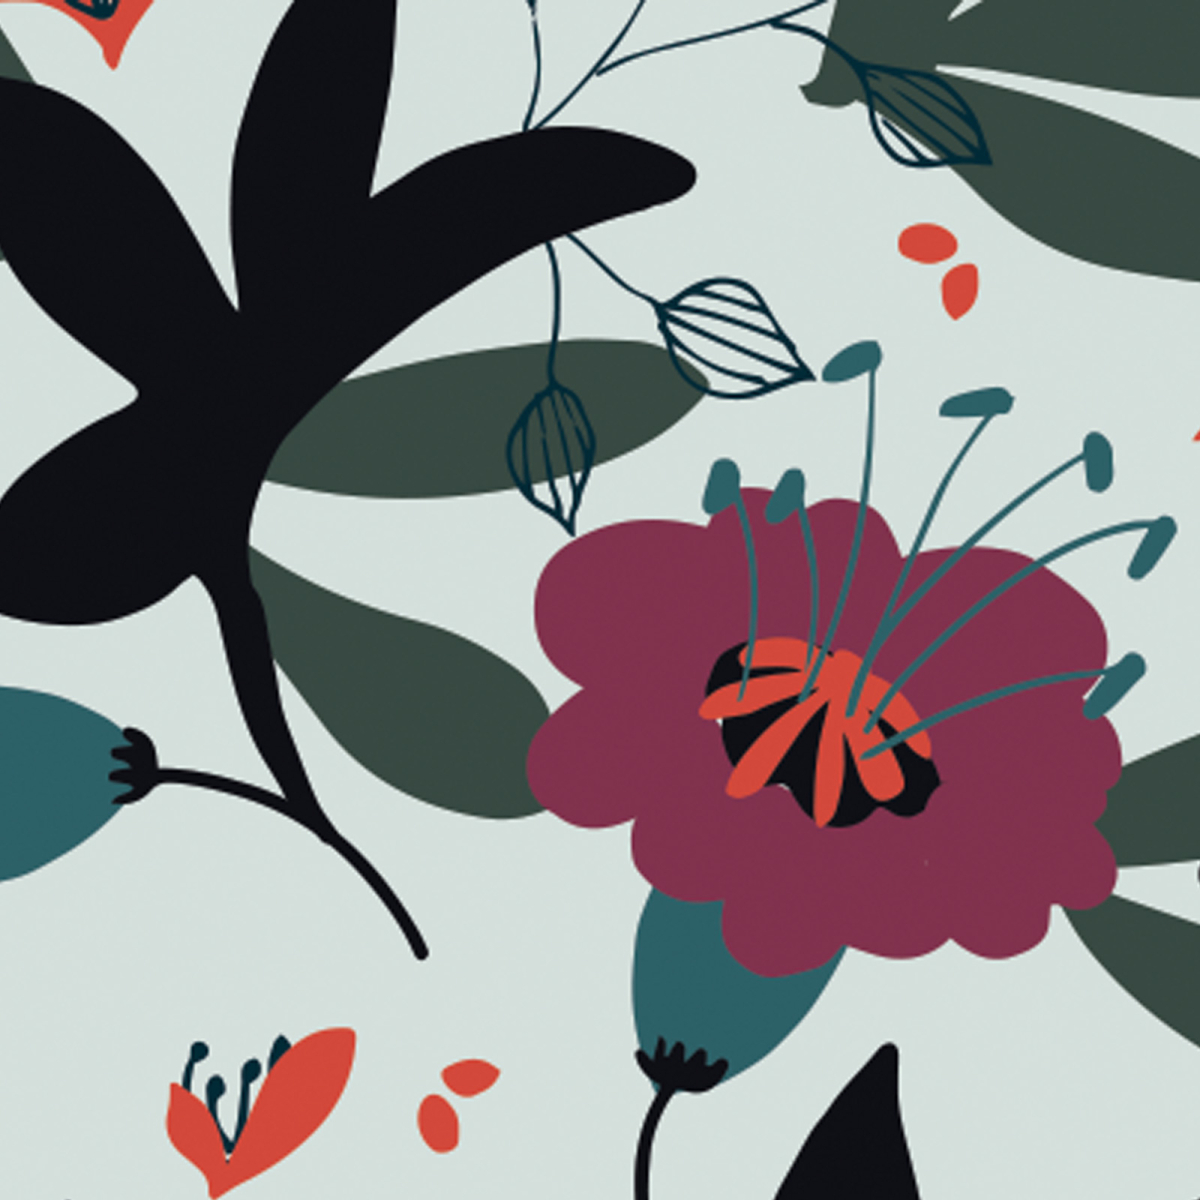 Papel pintado Motivos florales panorámicos - Colección Petit Atelier design - Acte-Deco